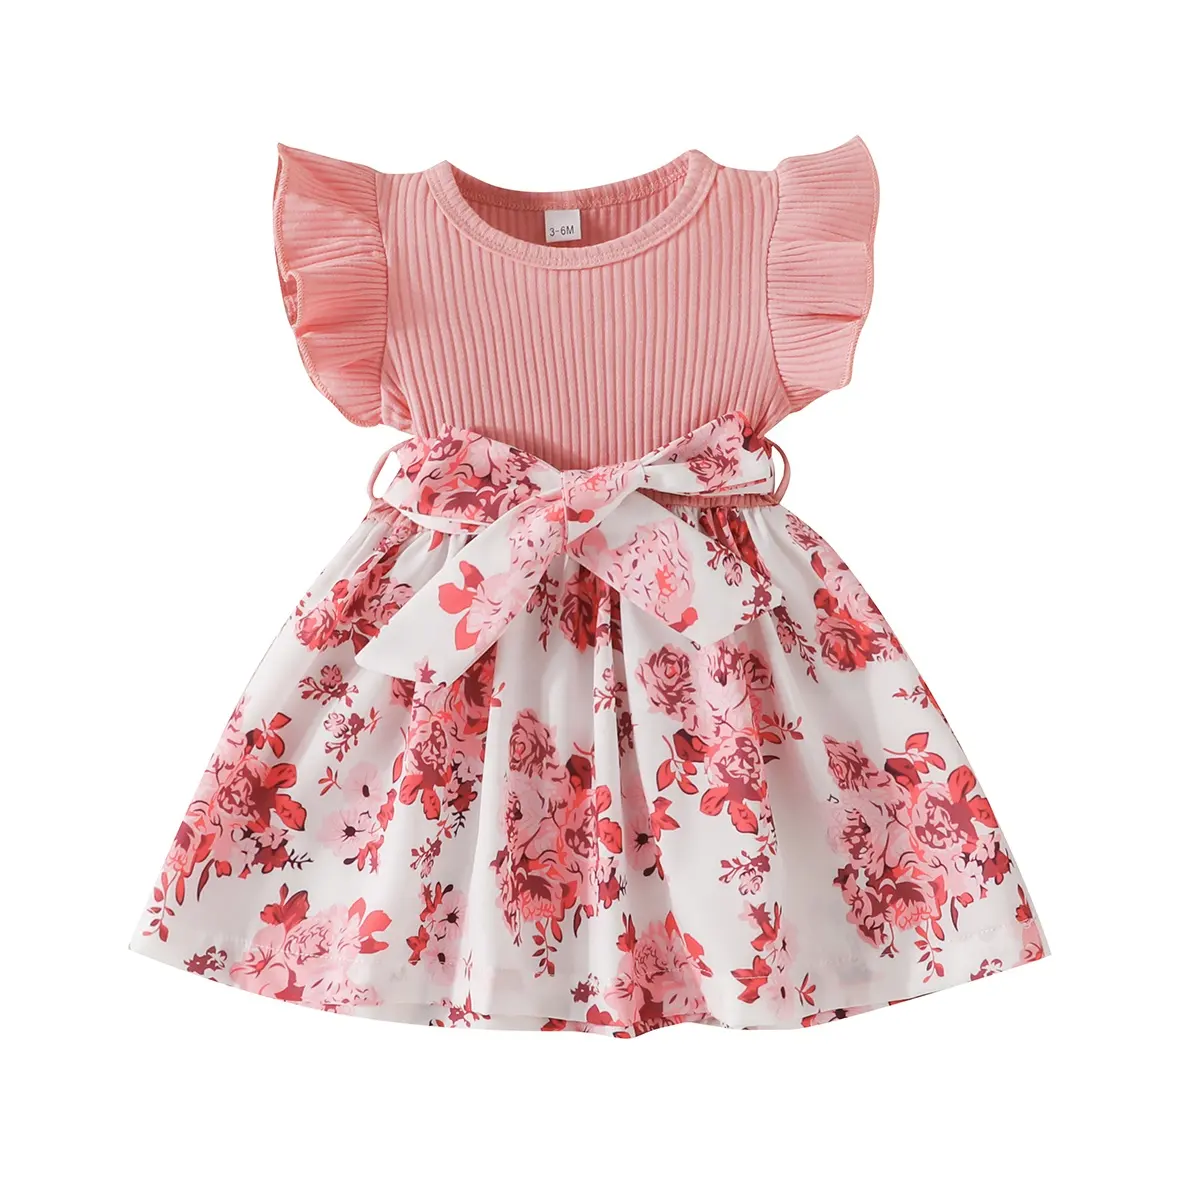 Vestido de fábrica al por mayor para niña de 3 a 24 meses, ropa de bebé, vestidos informales de manga corta de color rosa con lazo bonito para niña